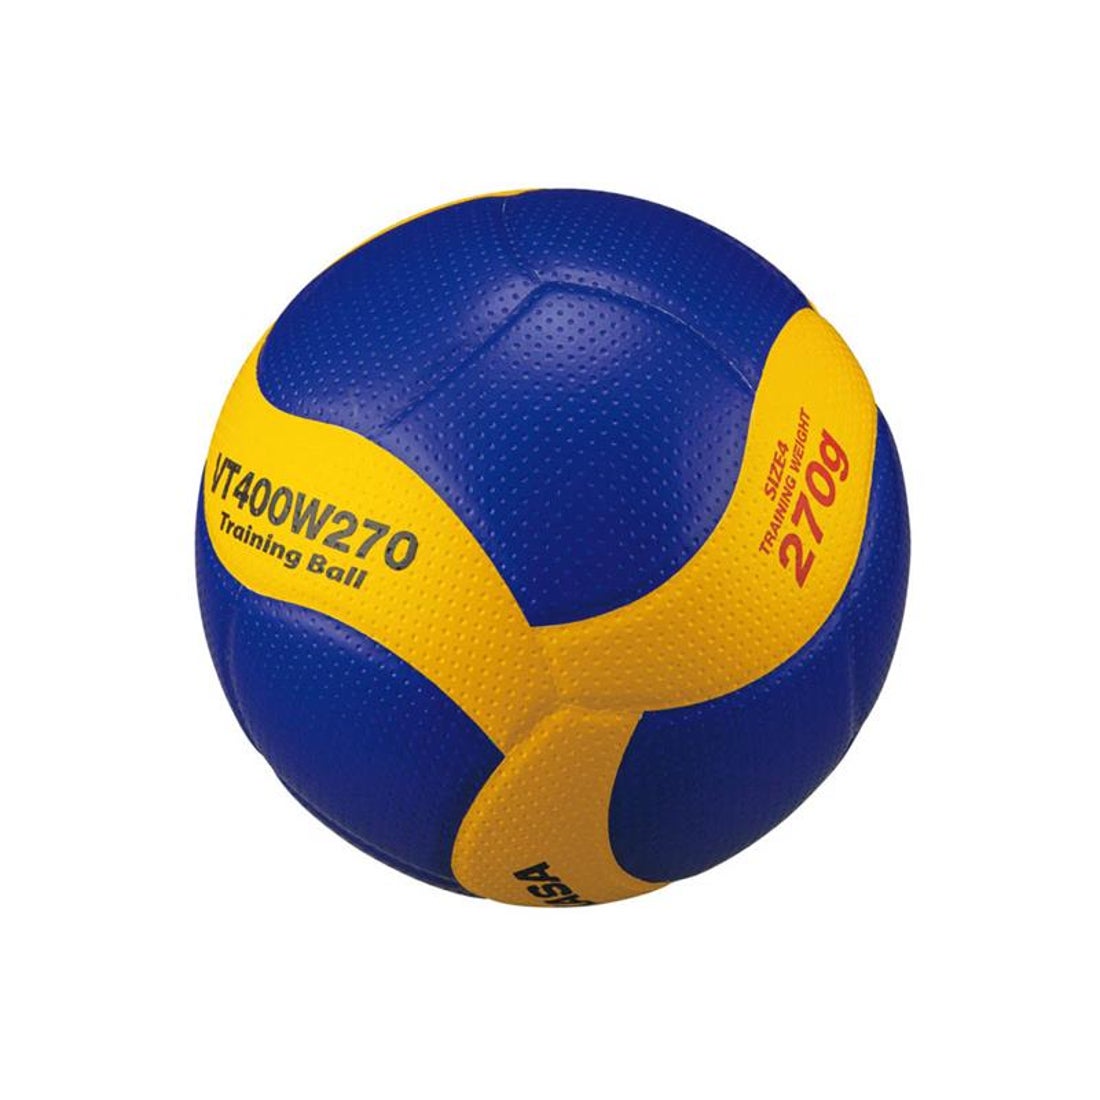 MIKASA ミカサ バレー4号 トレーニングボール重量約270ｇ(イエロー) VT400W270 ボール -【SWSバレーボール】